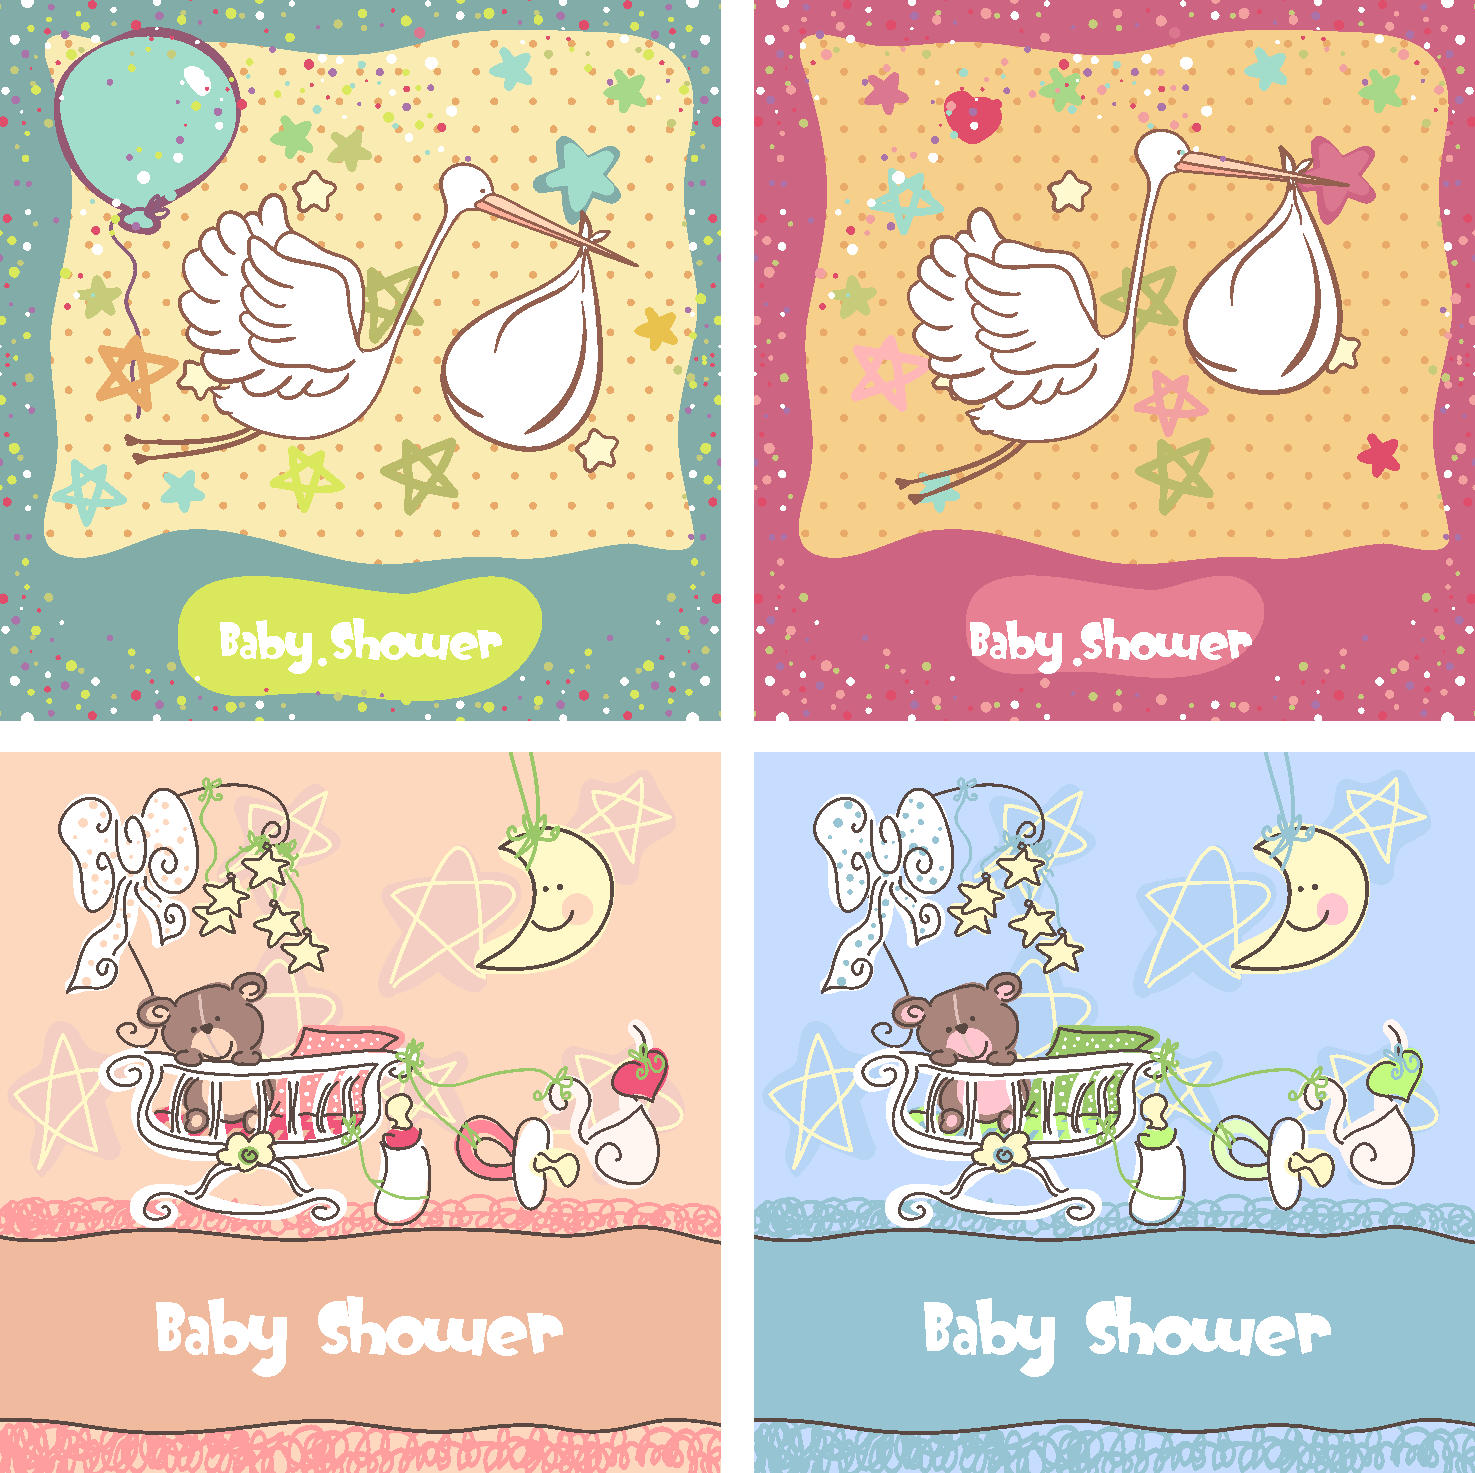 Plantillas gratis para invitaciónes de Baby Shower - Imagui